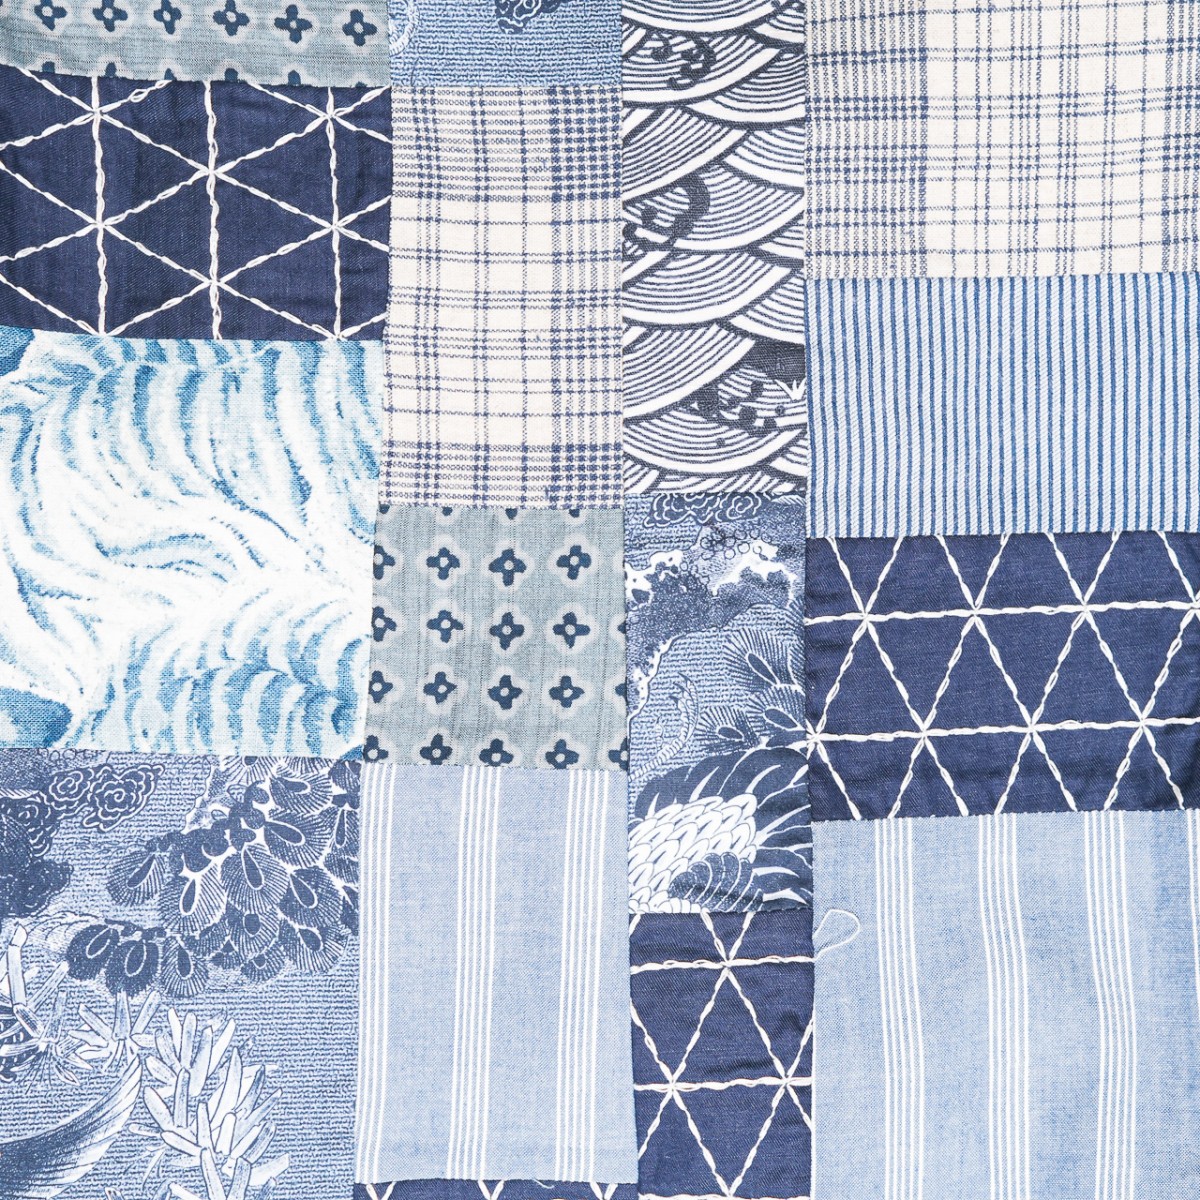 blazer-en-patchwork-de-tissus-japonais-tons-indigo-pour-femme-detail-tissu